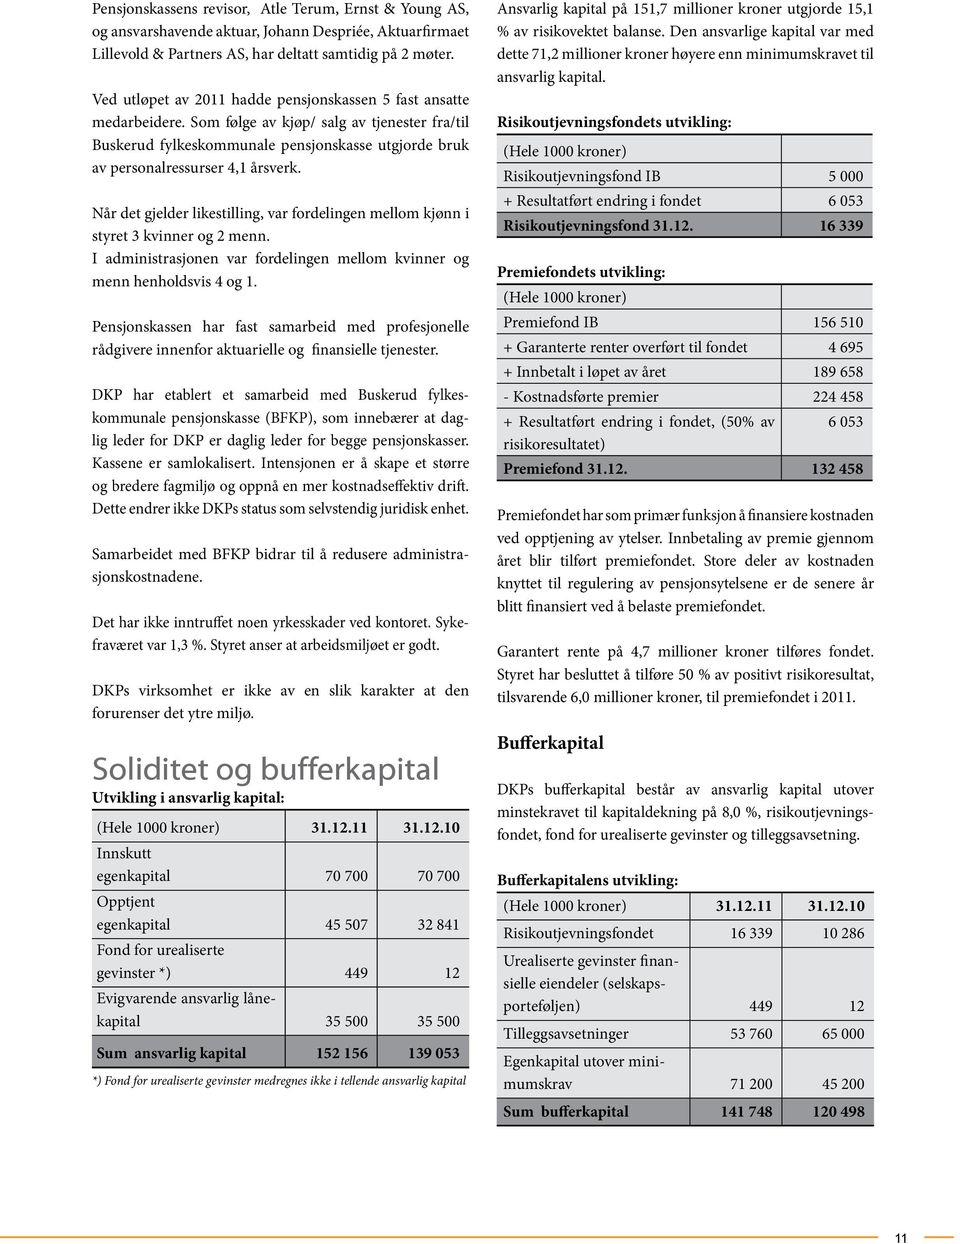 Som følge av kjøp/ salg av tjenester fra/til Buskerud fylkeskommunale pensjonskasse utgjorde bruk av personalressurser 4,1 årsverk.